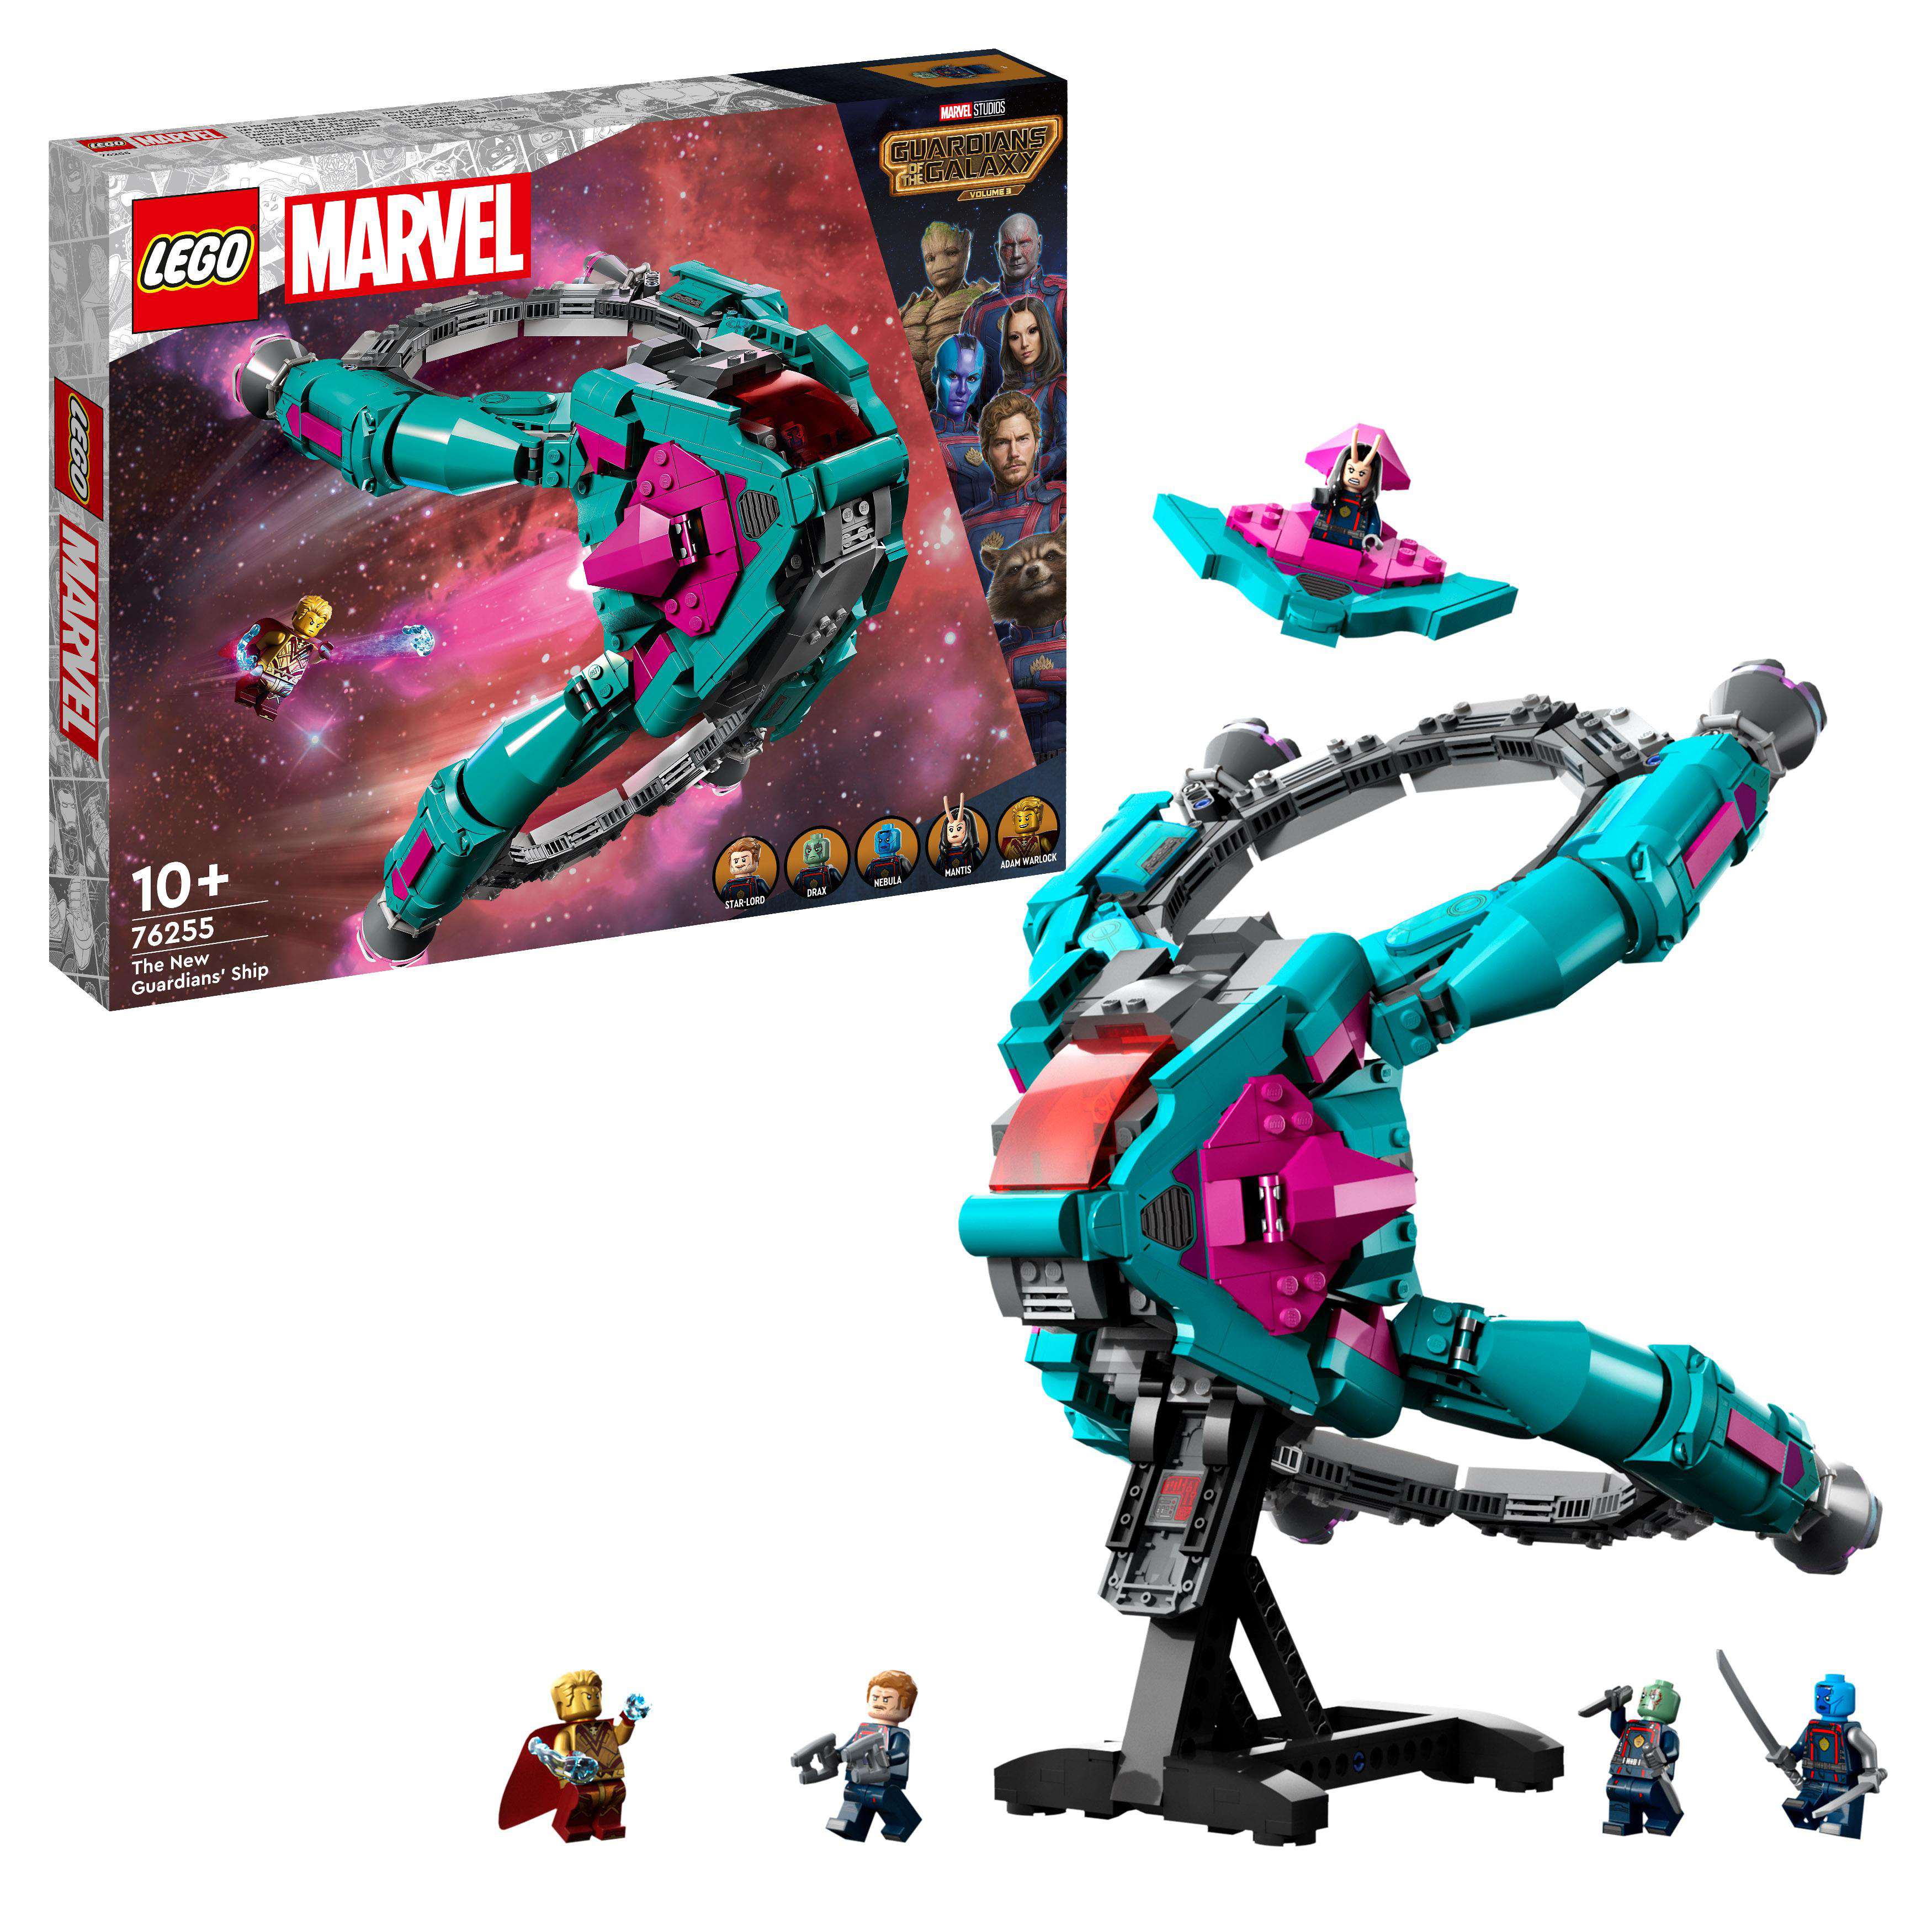 Mehrfarbig Guardians Schiff Das Marvel Bausatz, 76255 neue der LEGO